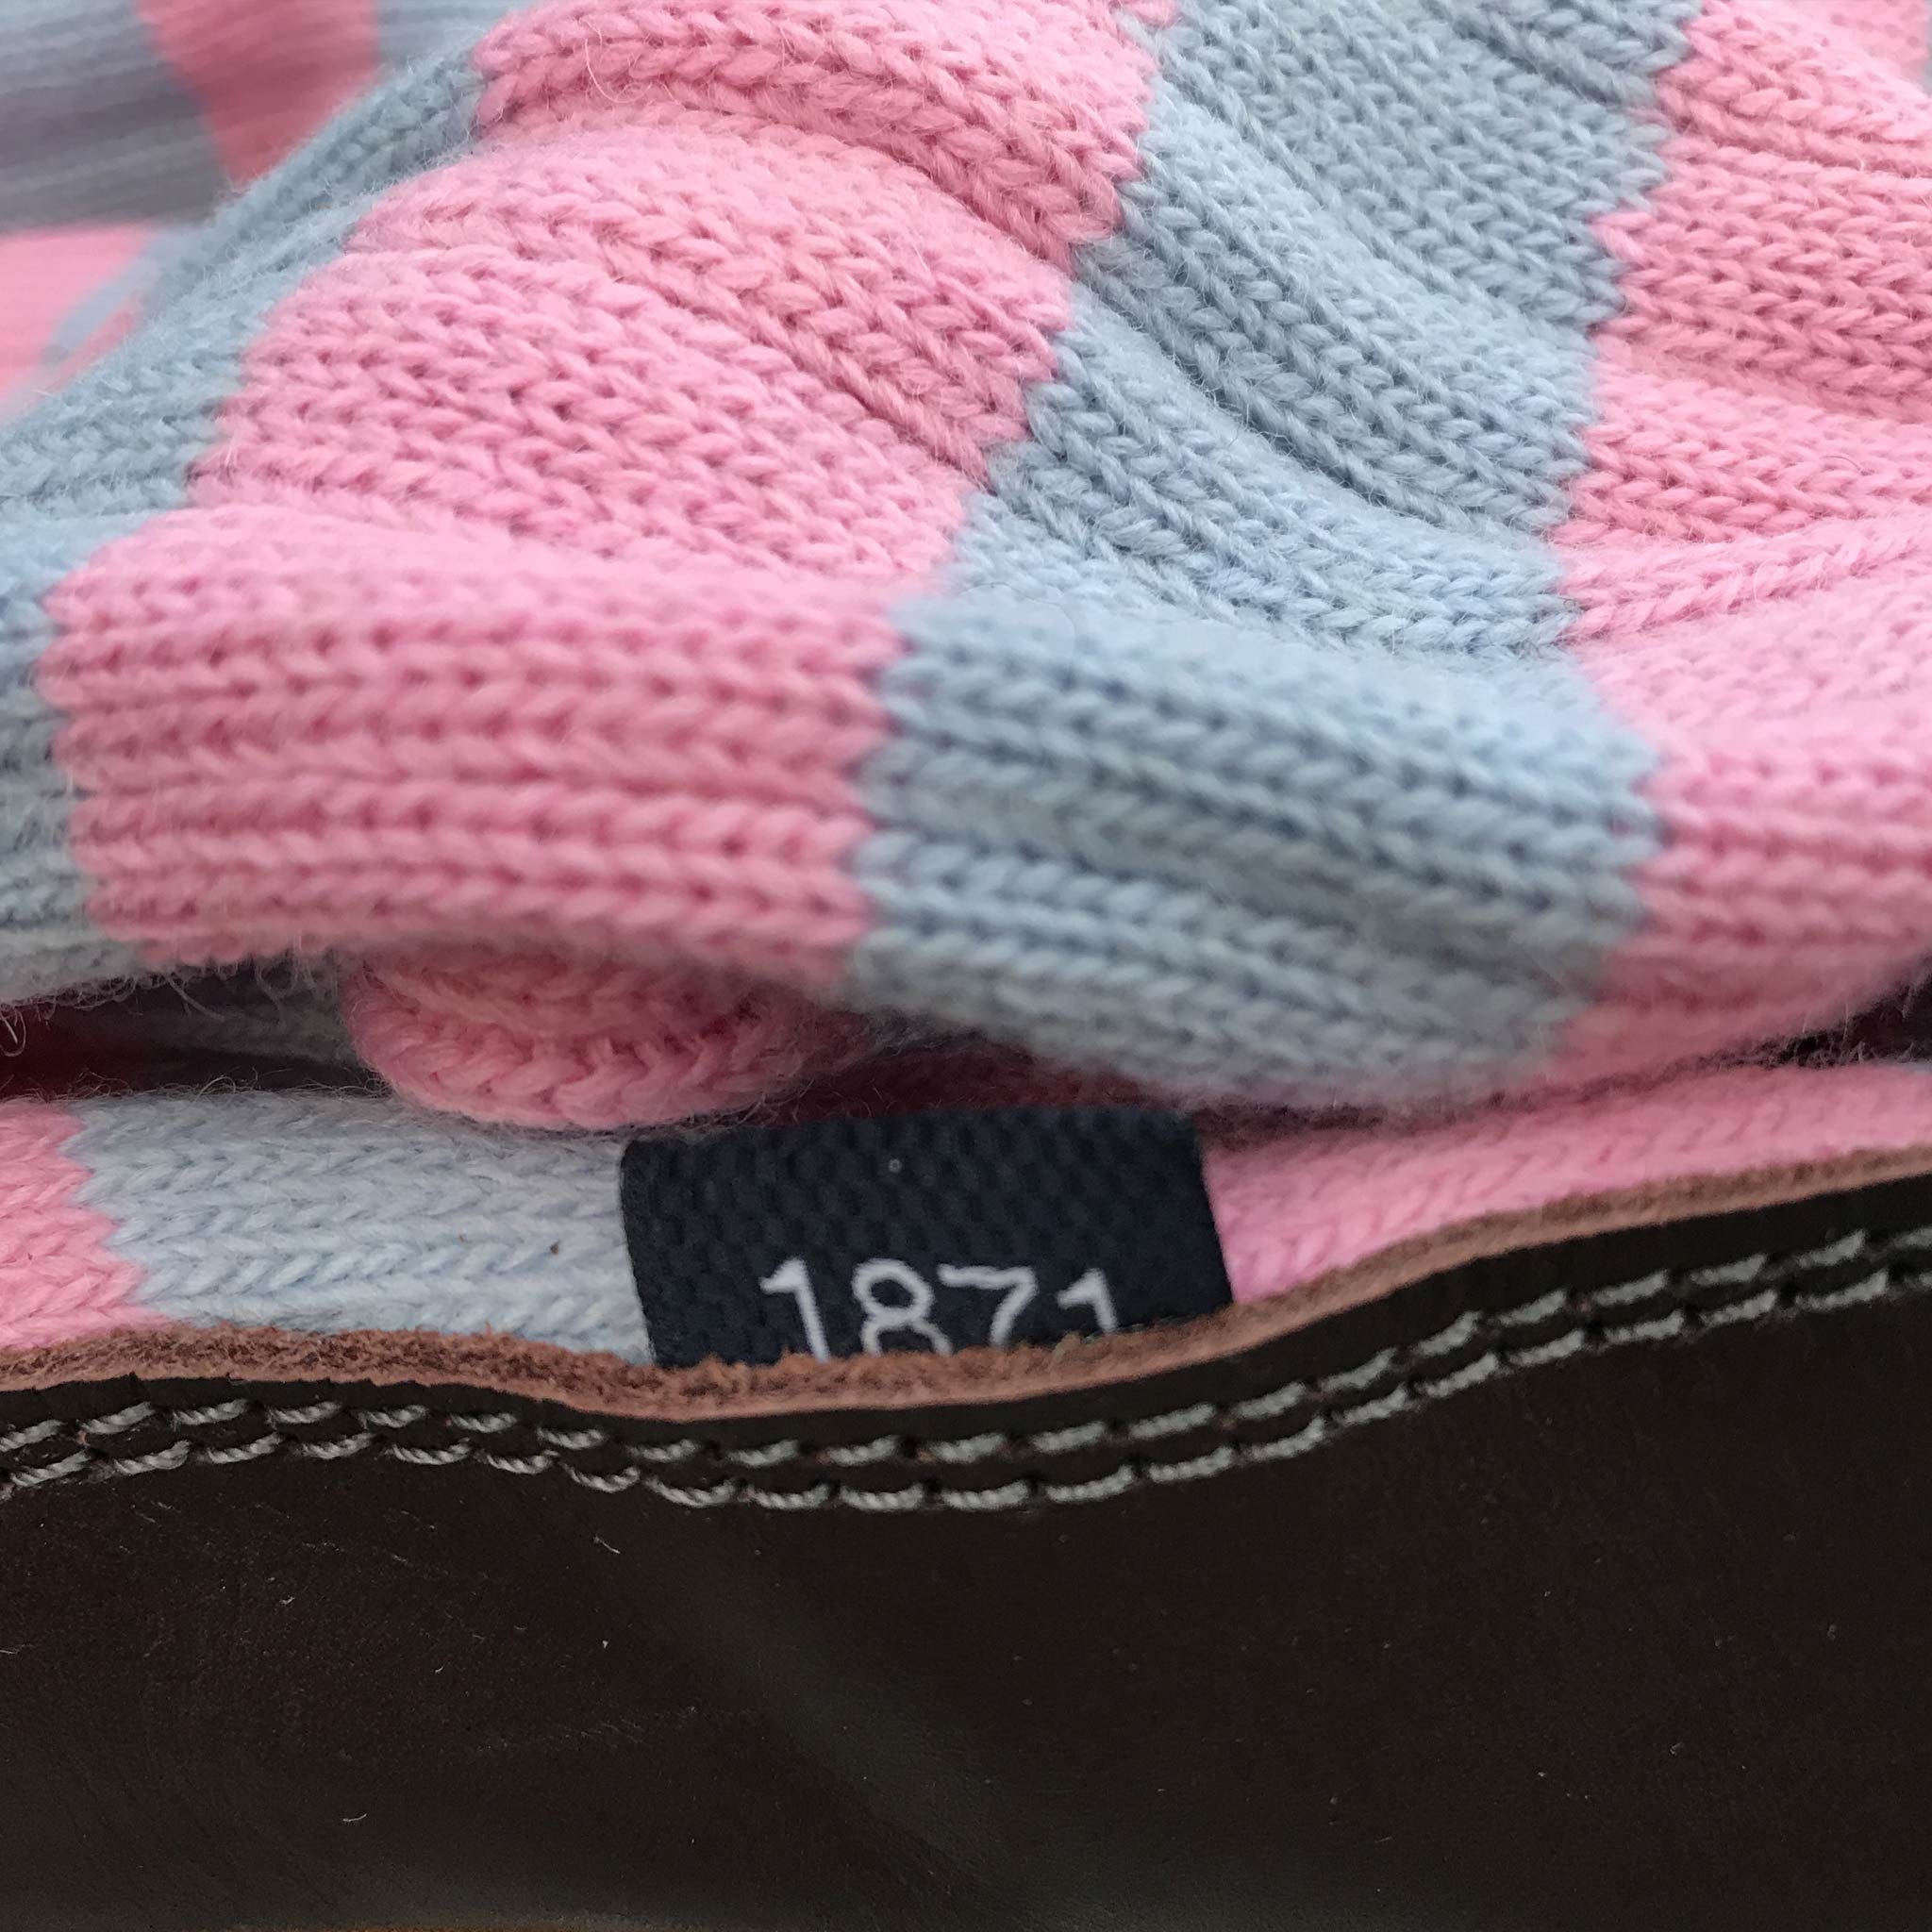 Slipper Sock sky blue and pink stripe - closeup